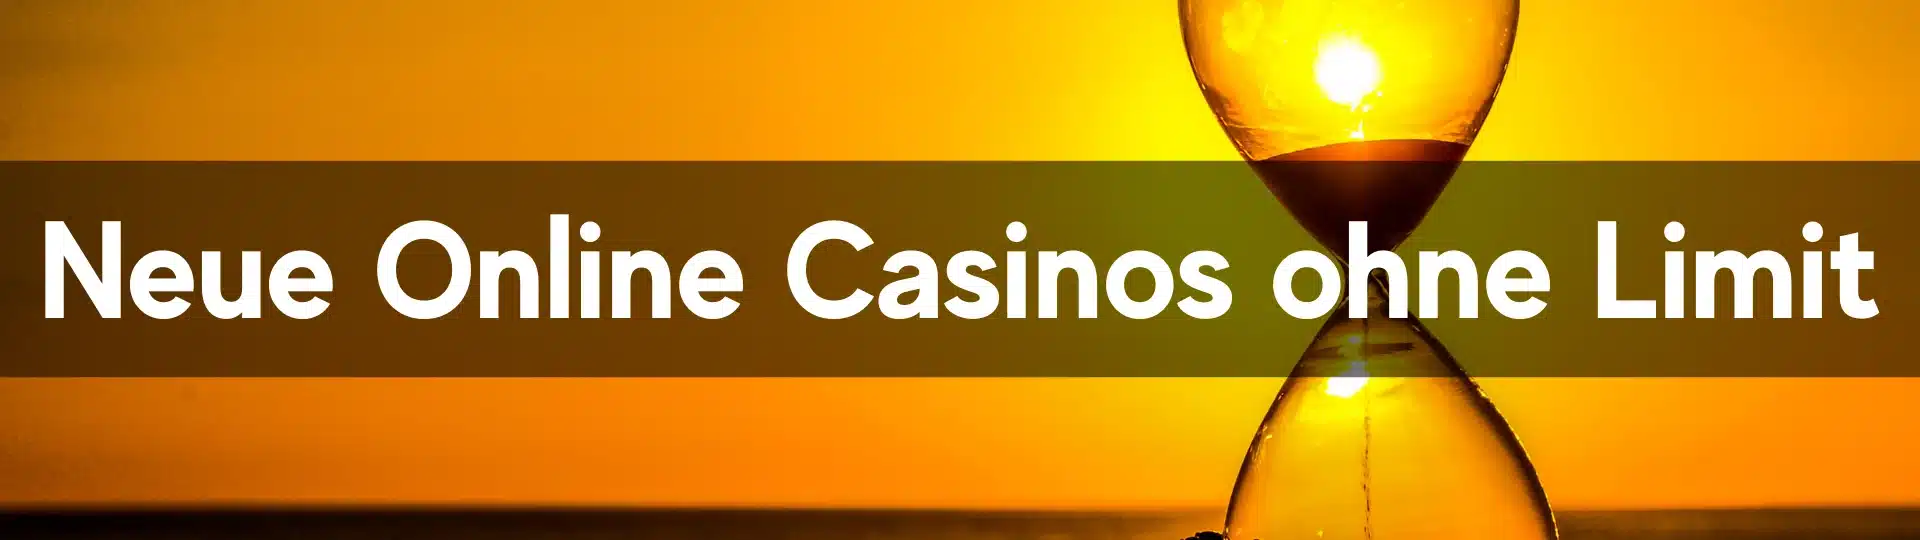 Neue Online Casinos ohne Limit